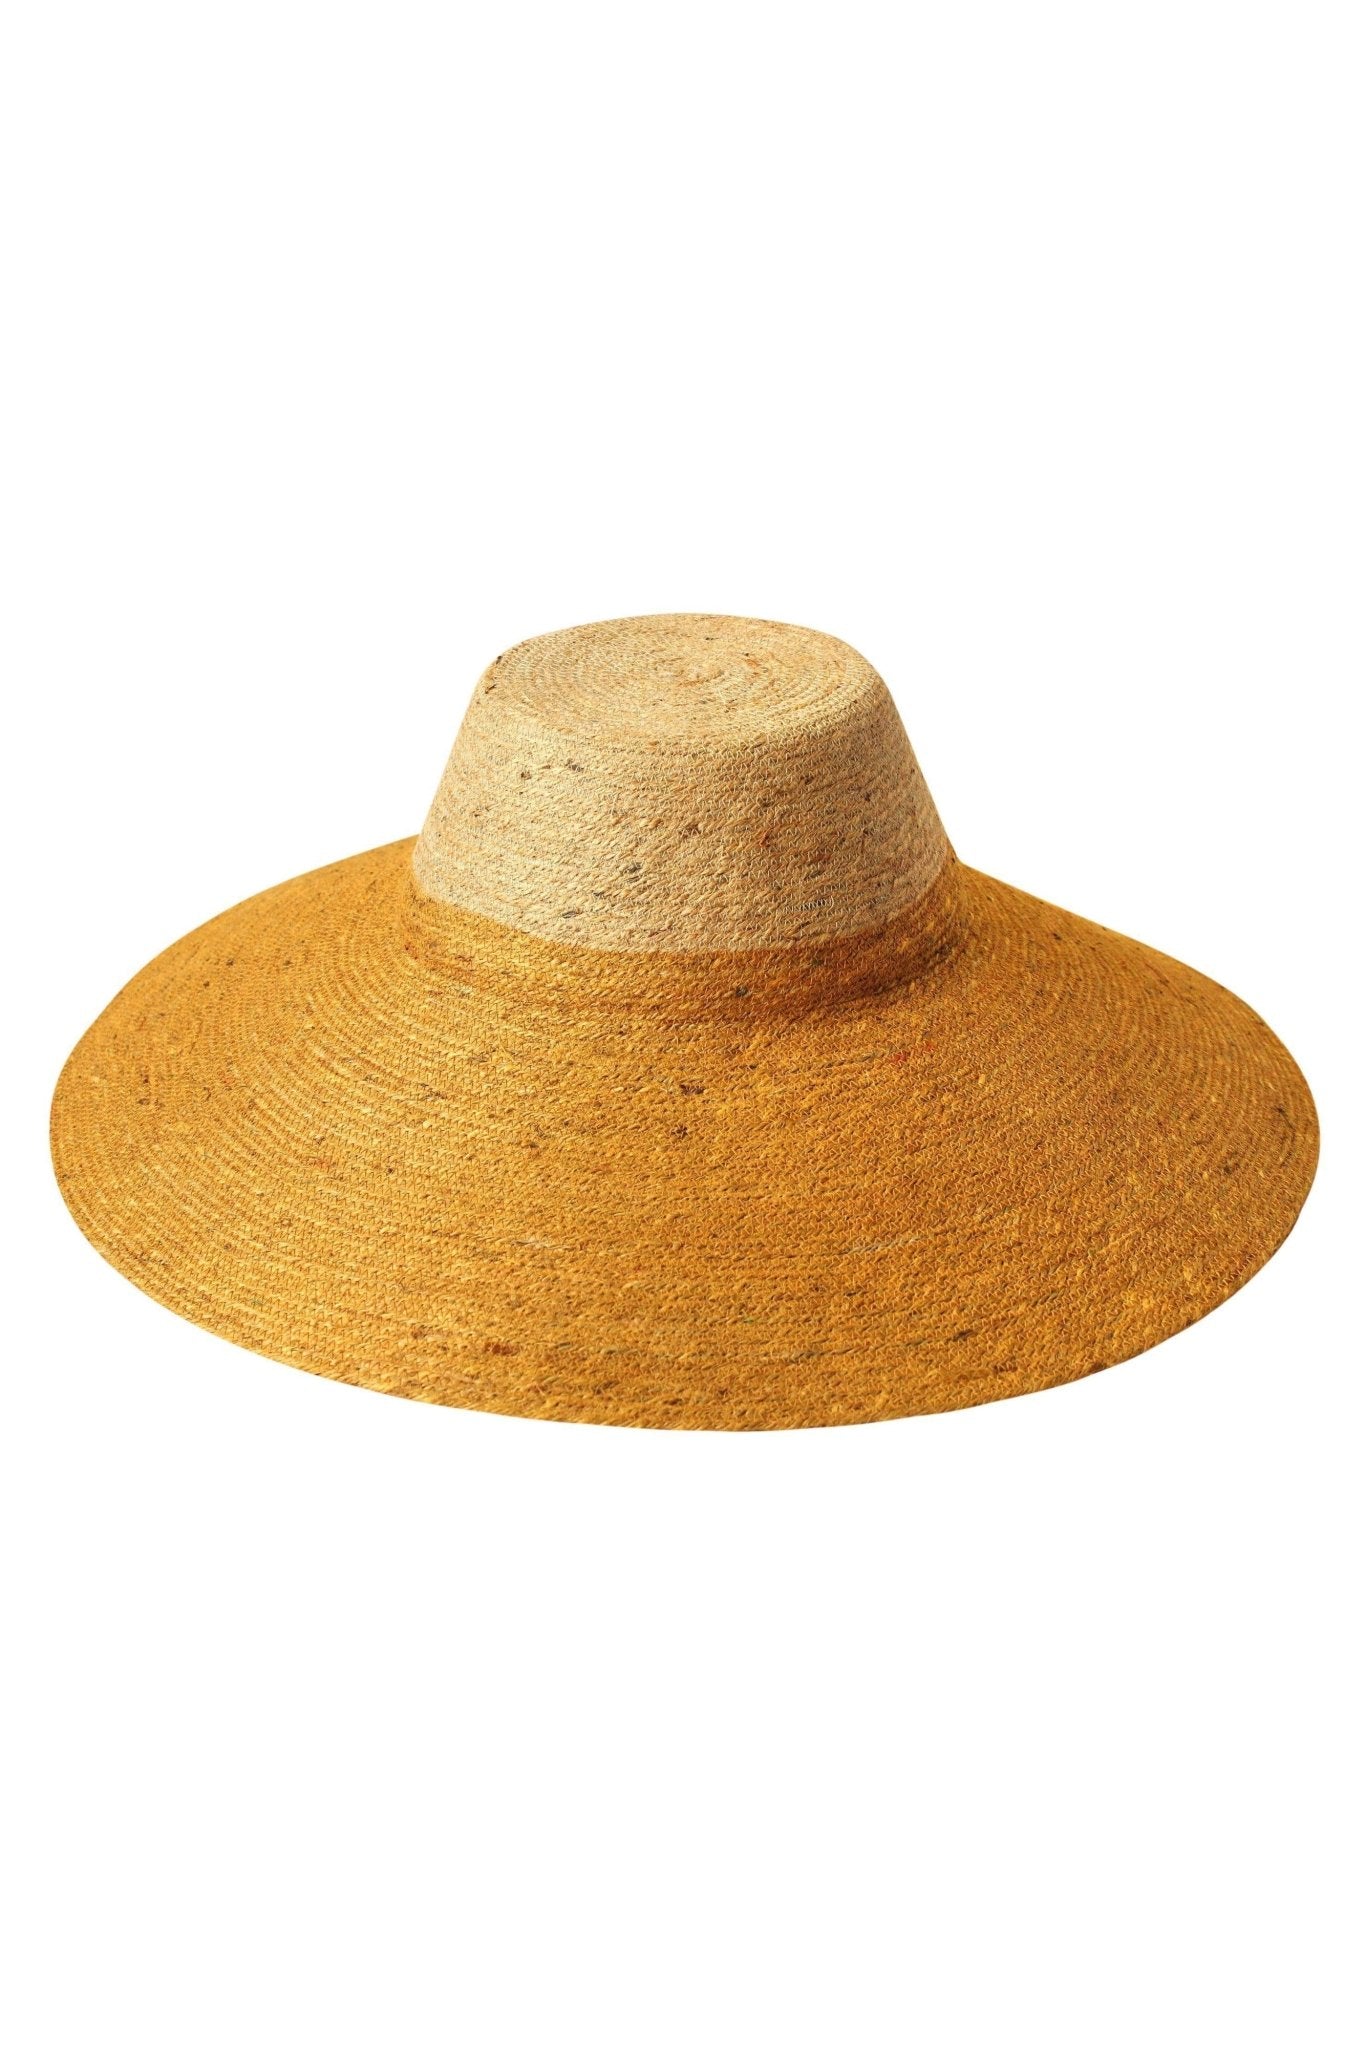 RIRI DUO Jute Straw Hat, in Nude & Golden Yellow - Mack & Harvie